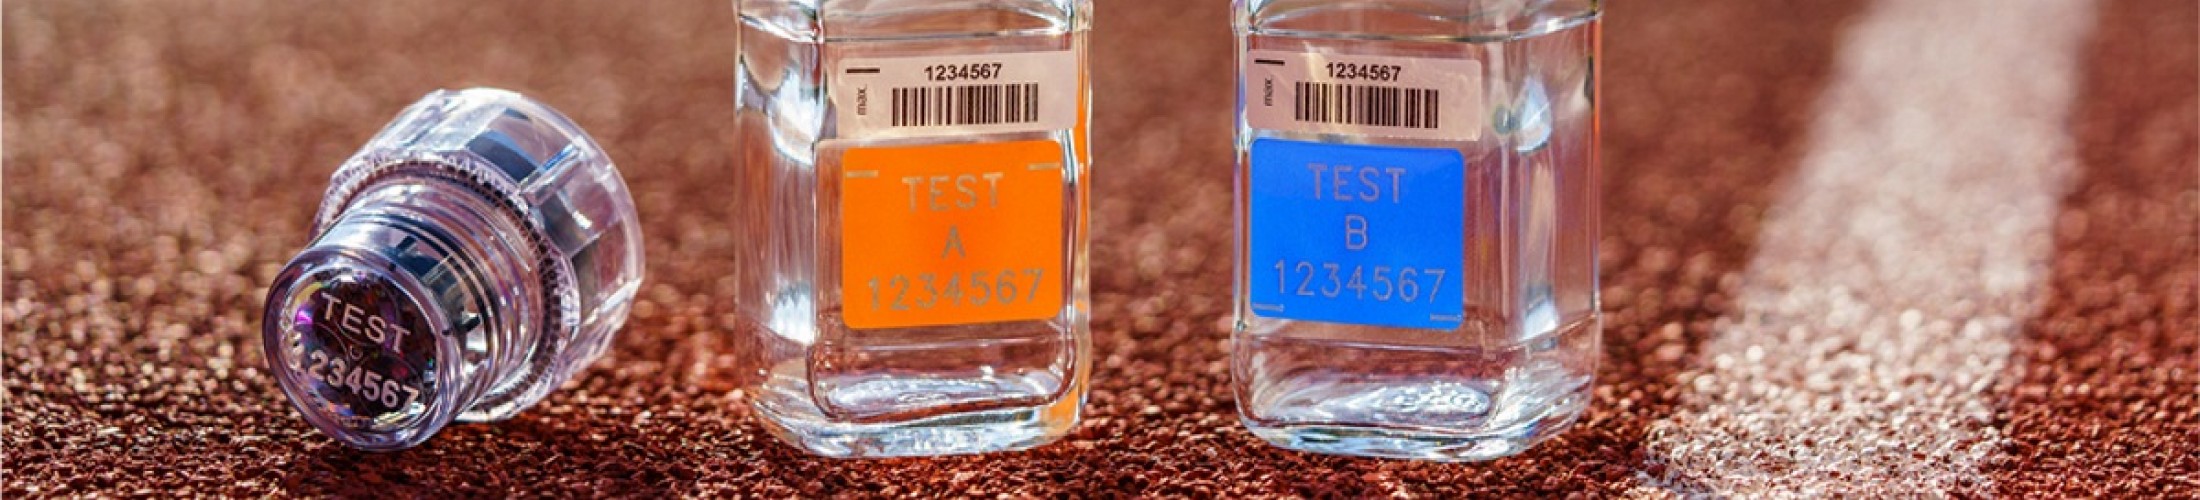 testing bottles v2